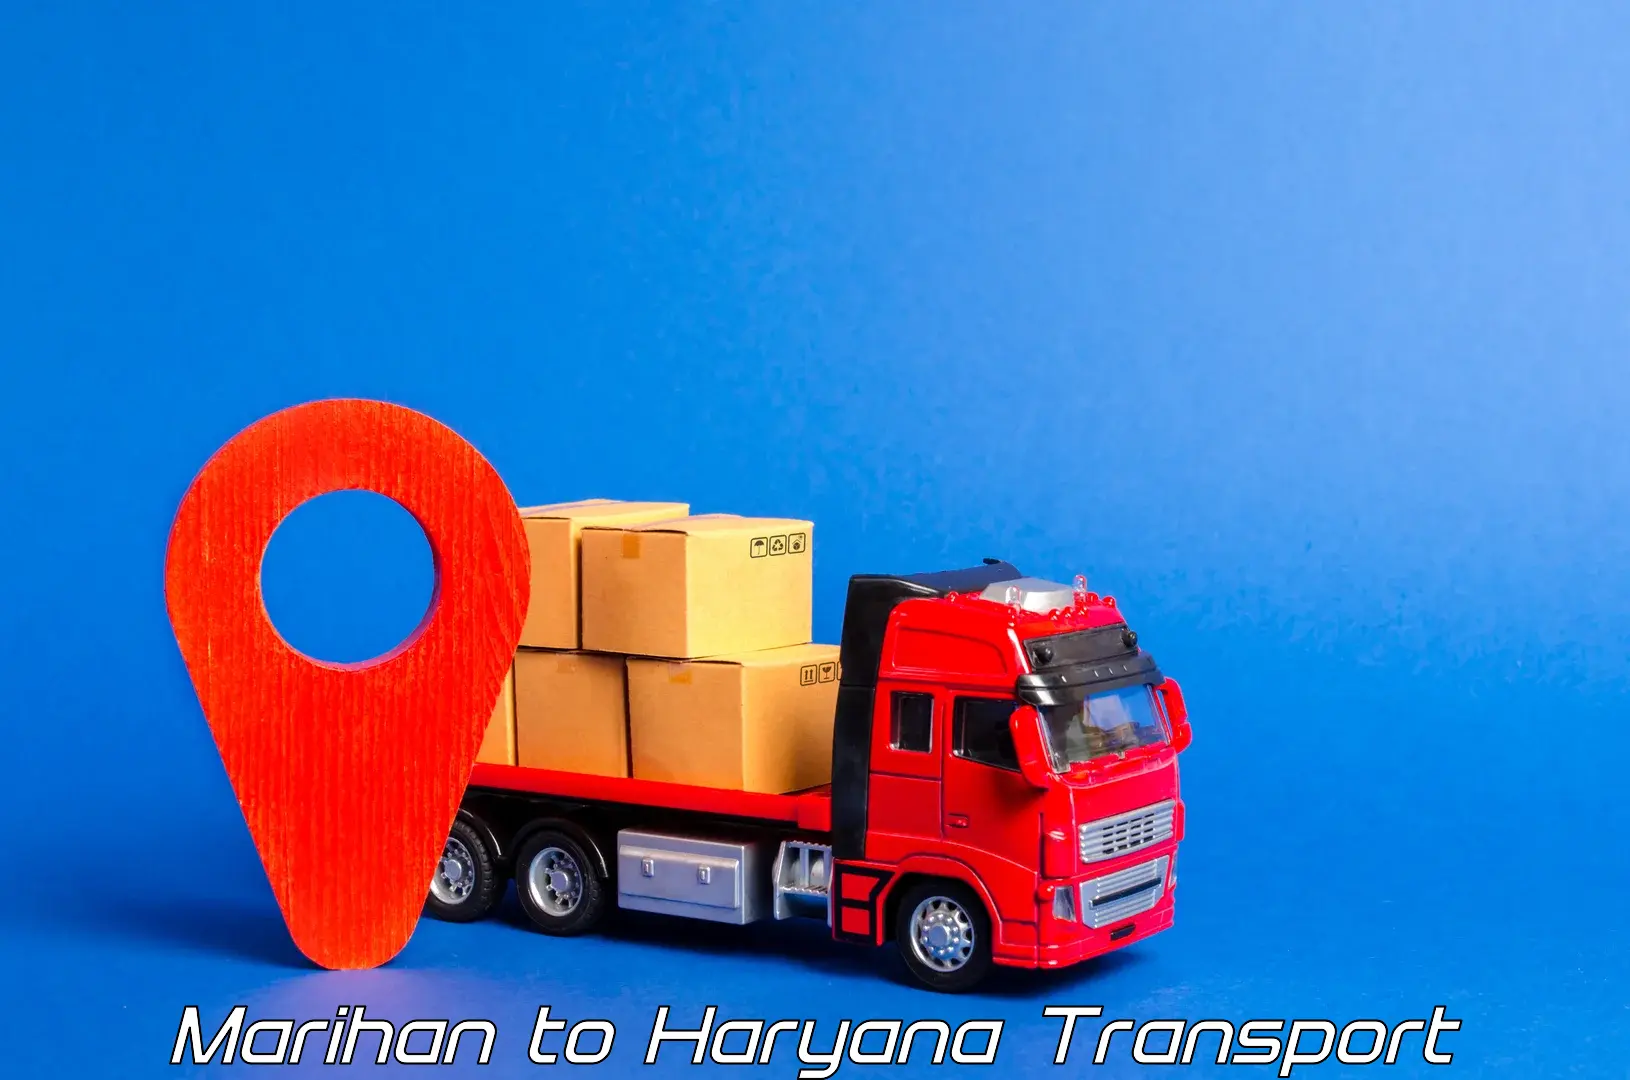 Furniture transport service Marihan to Haryana